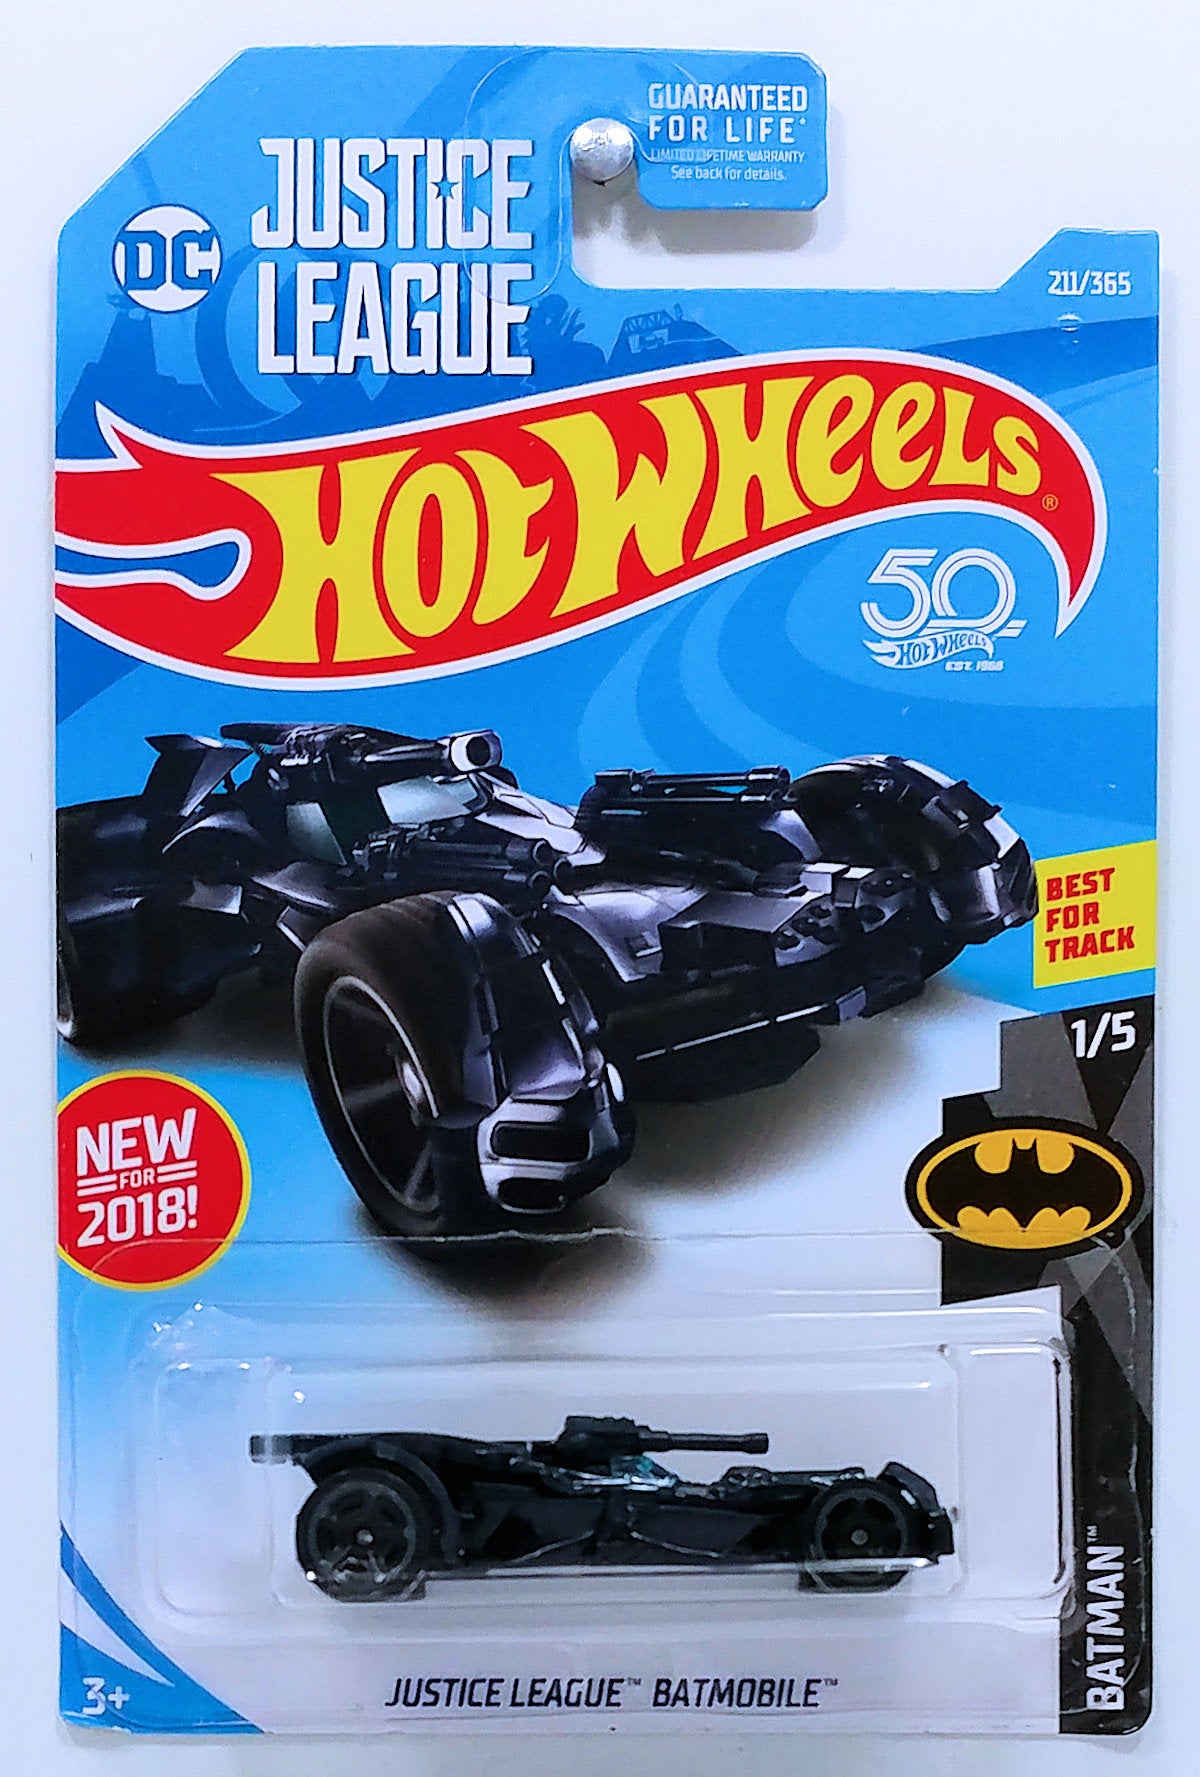 Hot Wheels 2018 - Collector # 211/365 - Batman 1/5 - New Models - Justice League Batmobile - Blue - USA